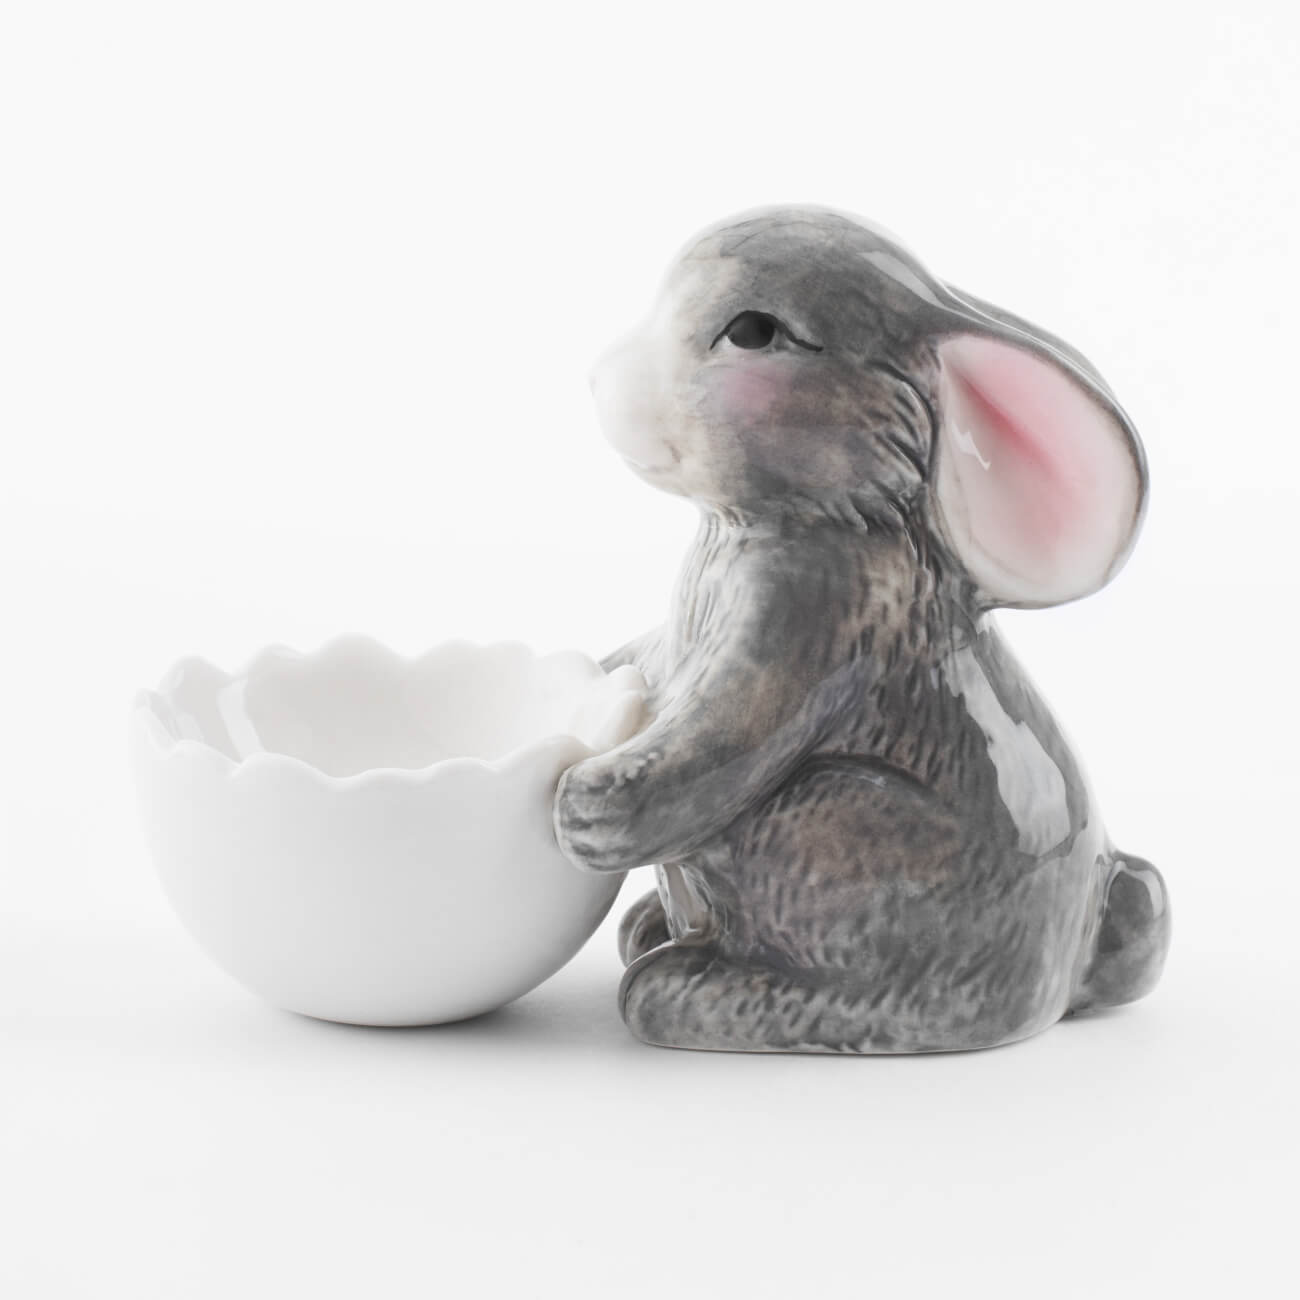 Подставка для яйца, 11 см, фарфор P, бело-серая, Кролик со скорлупой, Pure Easter подставка под монитор